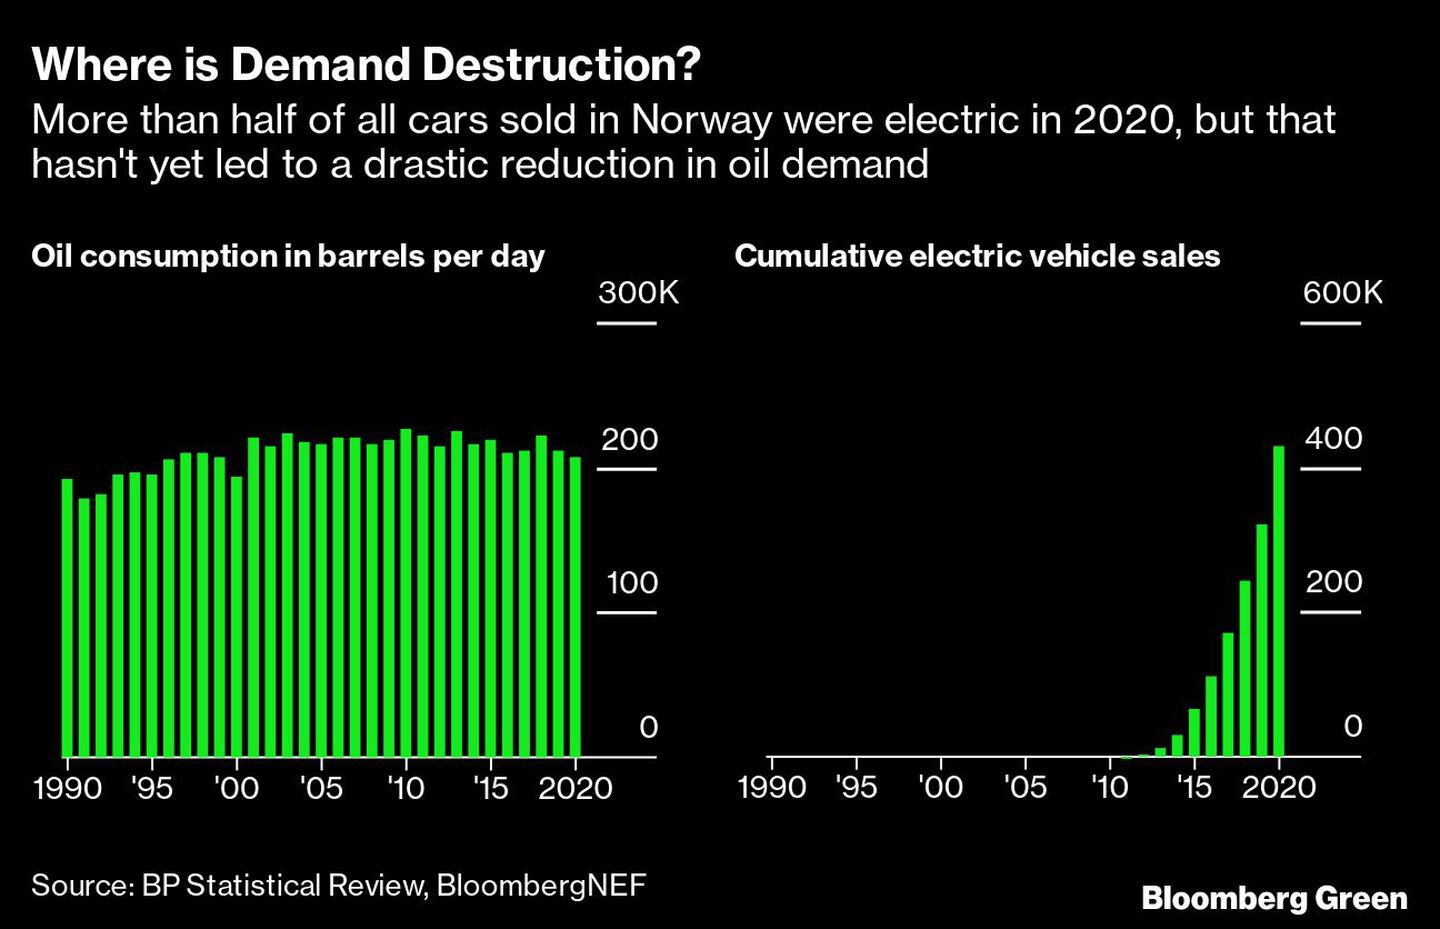 Más de la mitad de los coches vendidos en Noruega serán eléctricos en 2020, pero eso aún no ha provocado una reducción drástica de la demanda de petróleo dfd